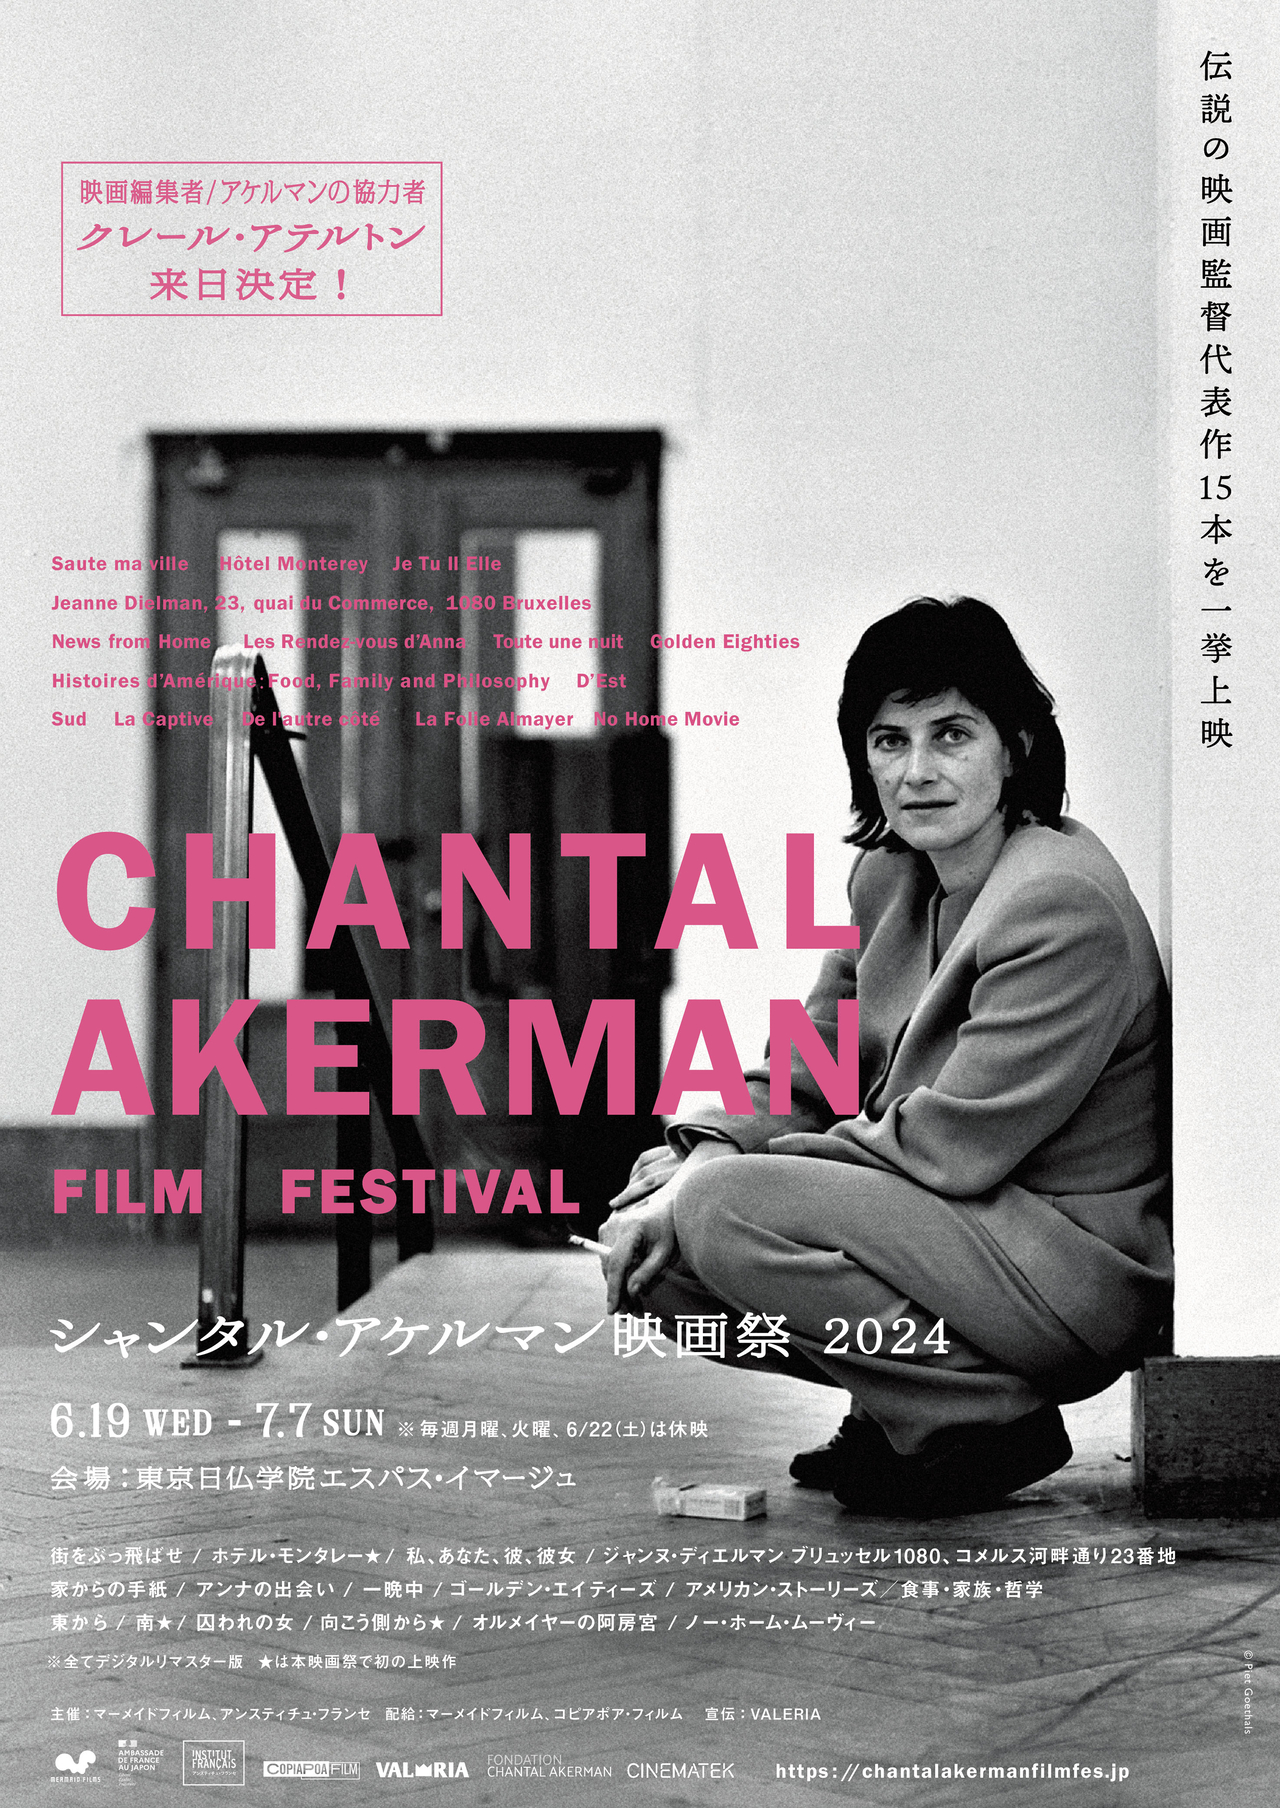 「シャンタル・アケルマン映画祭2024」6月19日開催 映画祭初上映作品3作含む15本をラインナップ、来日ゲストのトークも